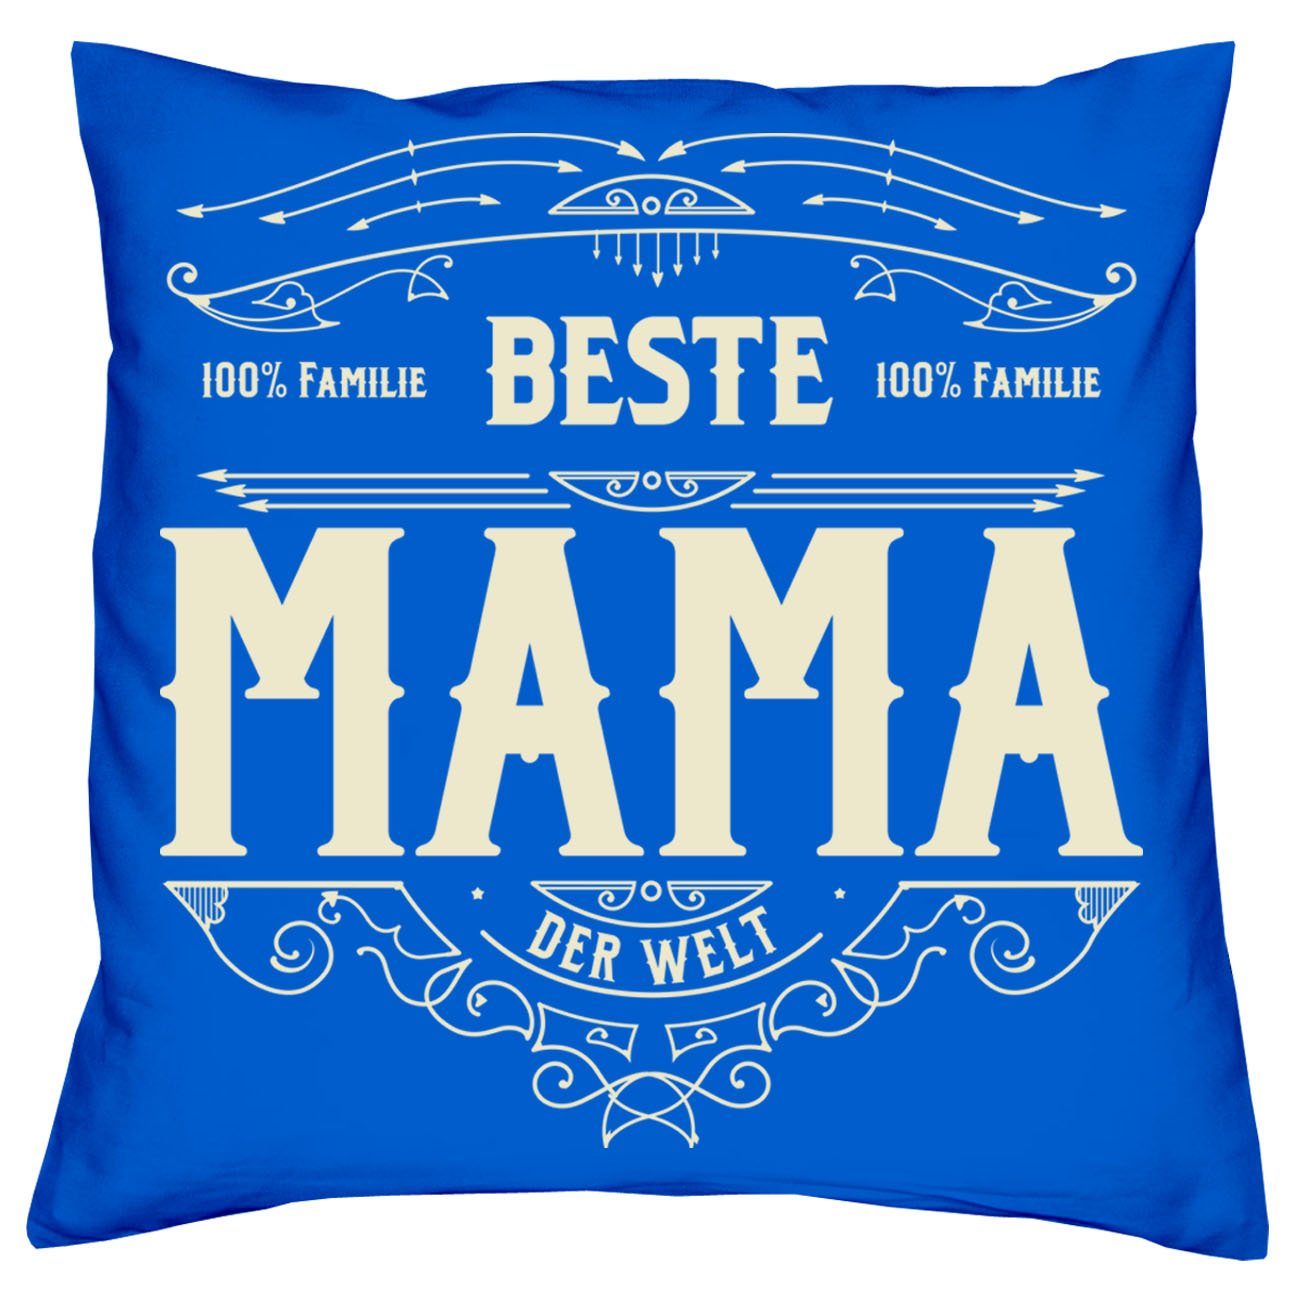 & Dekokissen Beste Mama royal-blau Urkunde, Mama Muttertagsgeschenk Soreso® Kissen